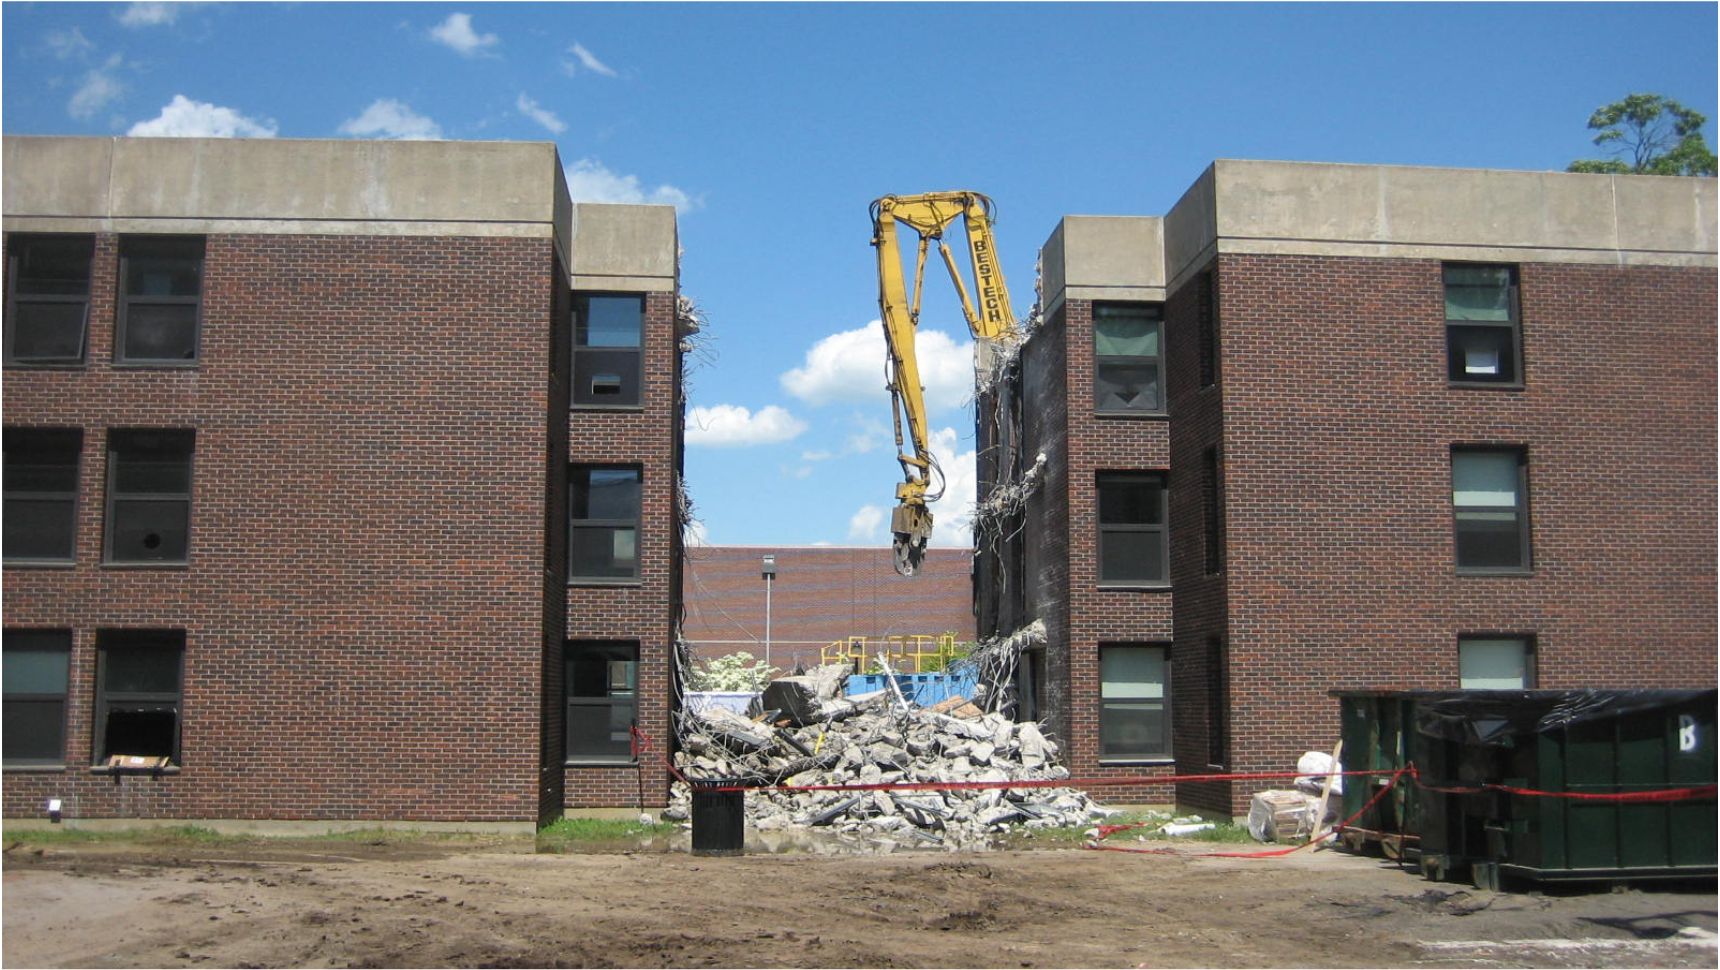 Building demolition